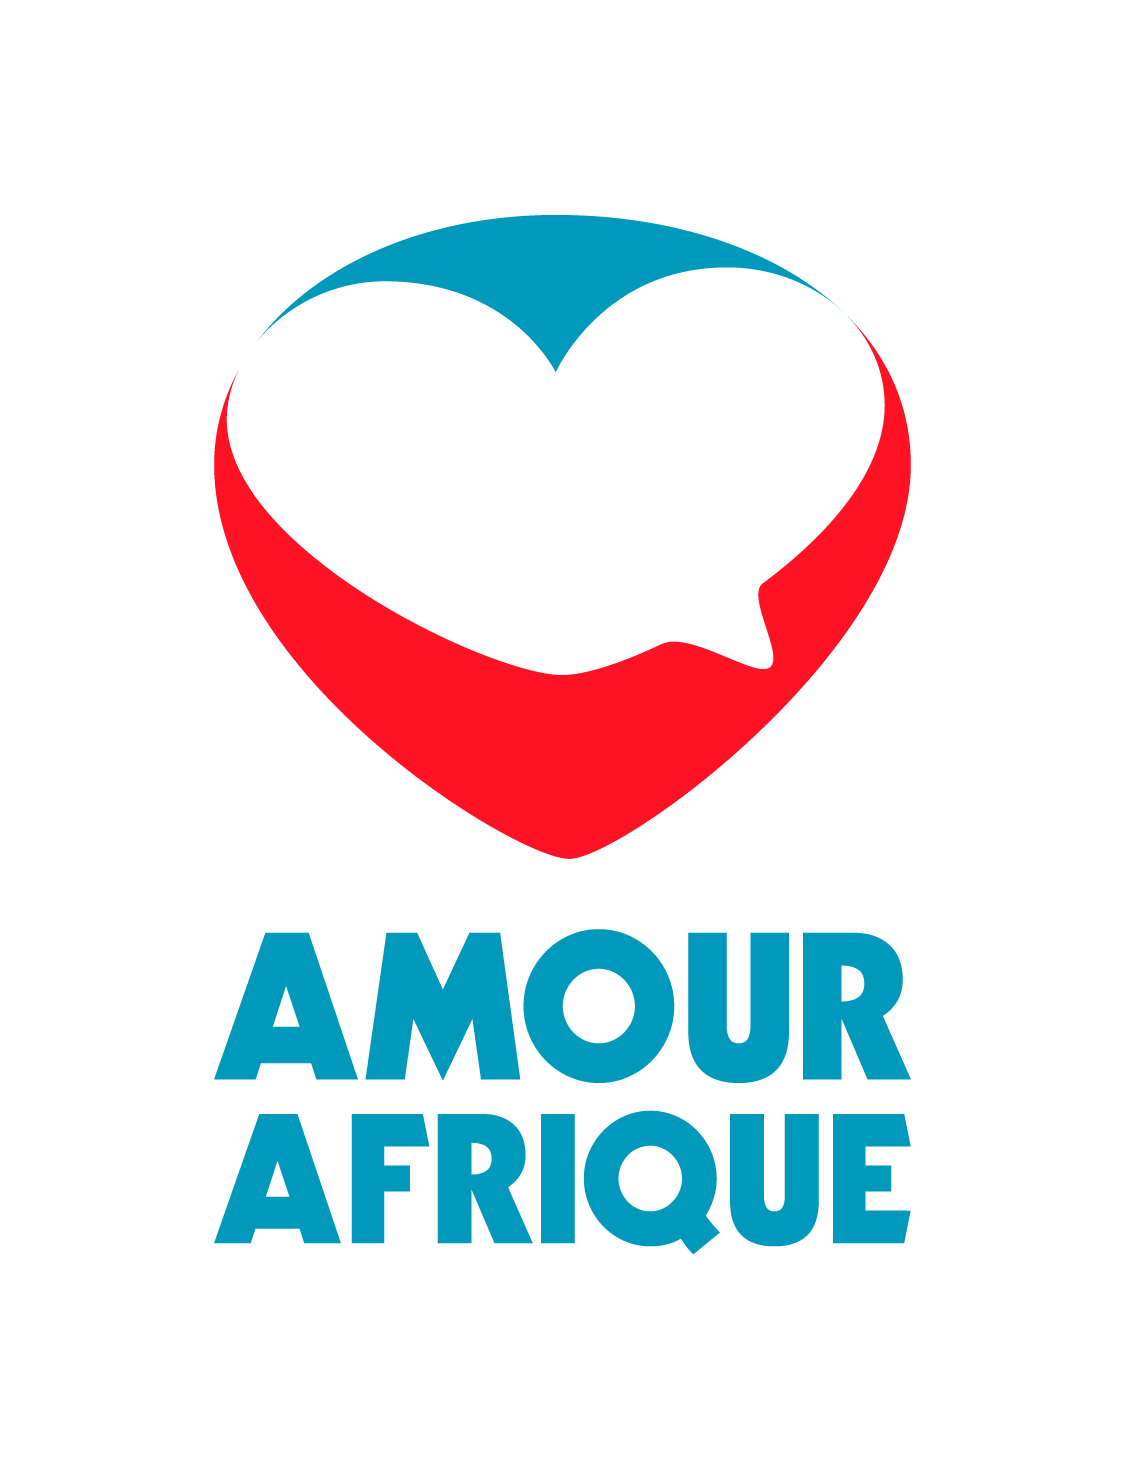 Amour Afrique logo